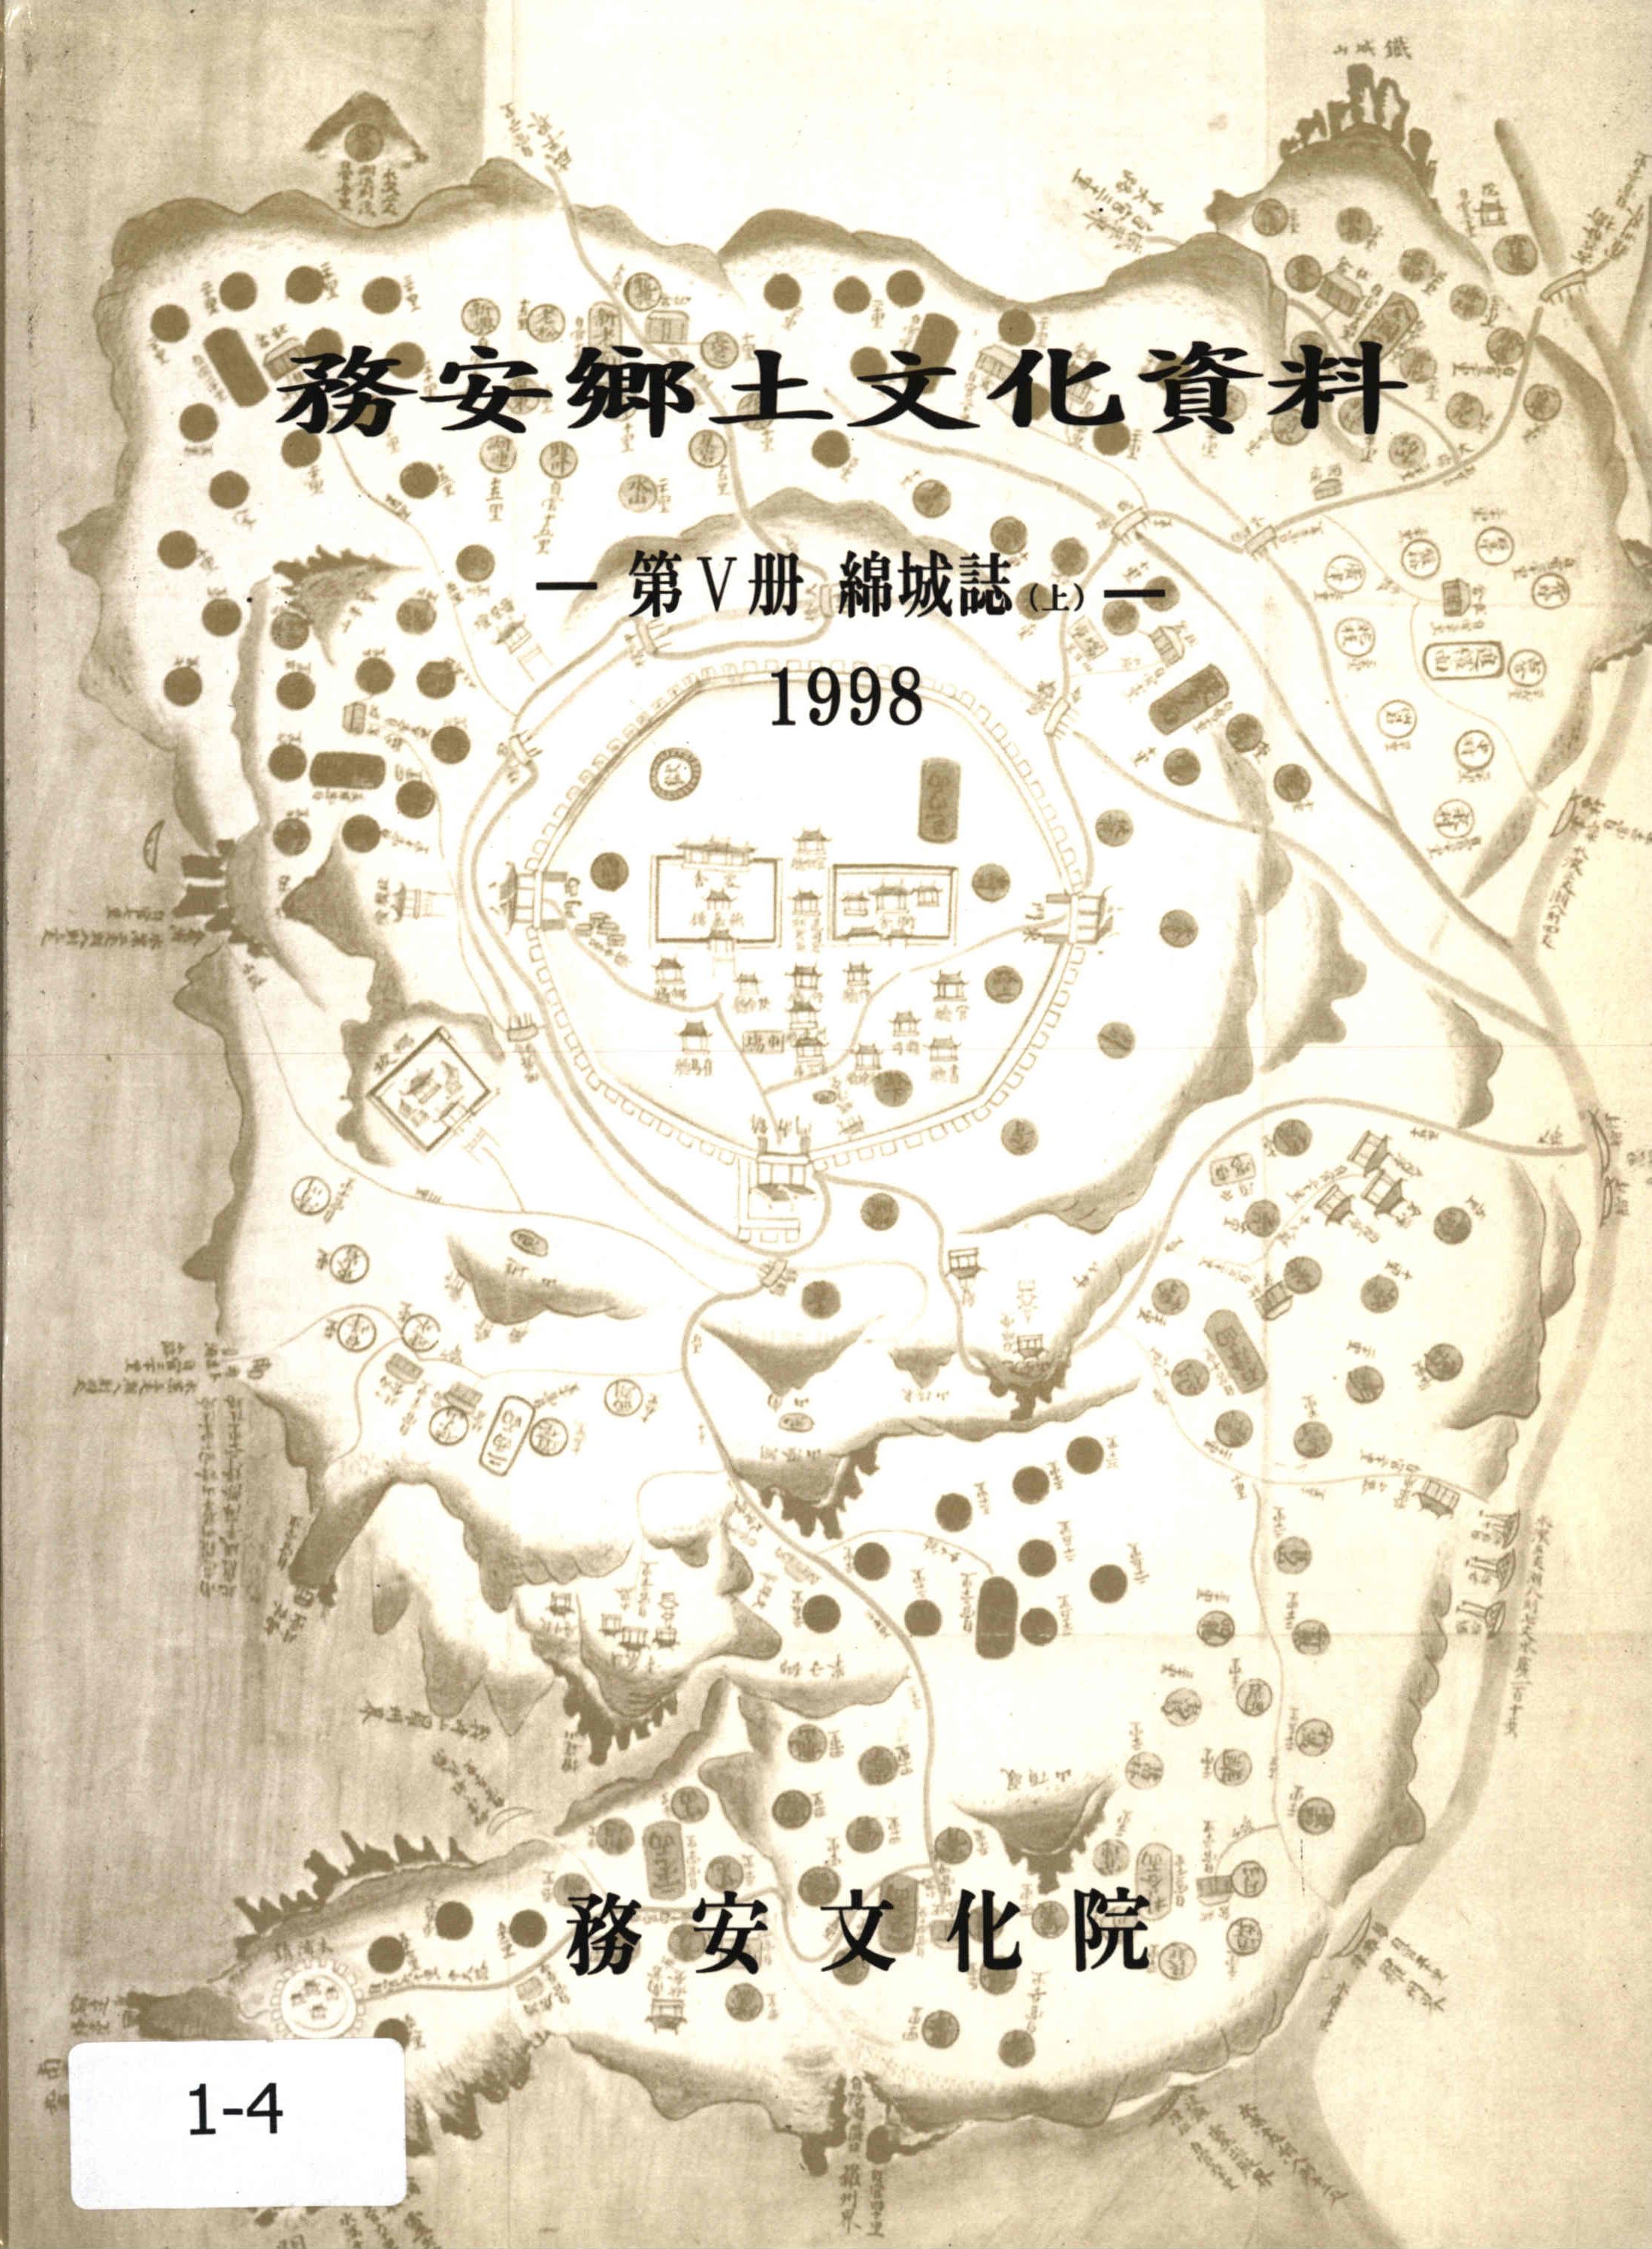 務安鄕土文化資料1998 (무안향토문화자료1998)